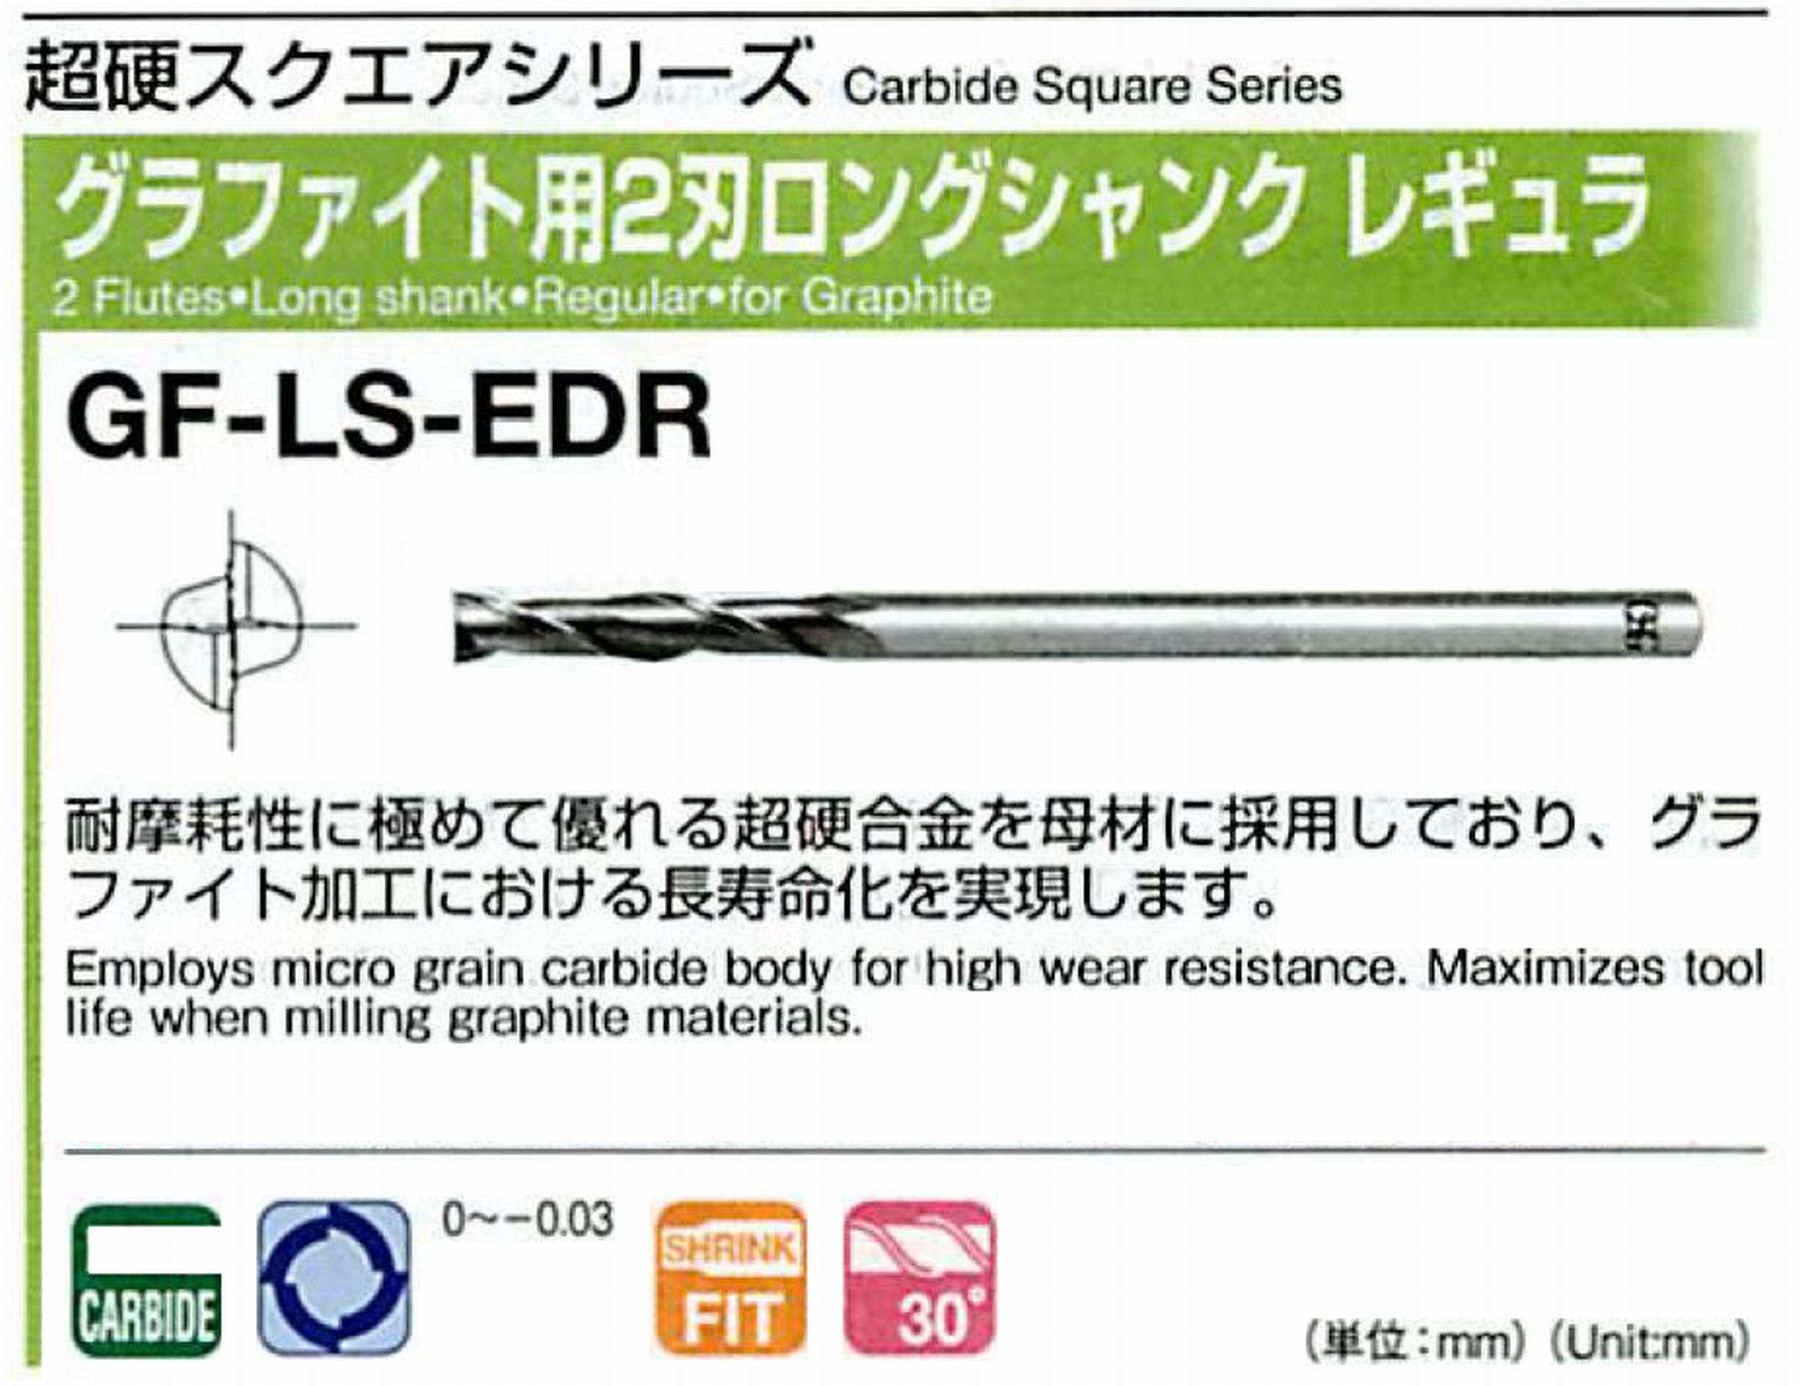 オーエスジー/OSG グラファイト用 2刃ロングシャンクレギュラ GF-LS-EDR 外径3 全長100 刃長15 シャンク径4mm 首下長40 首径2.9